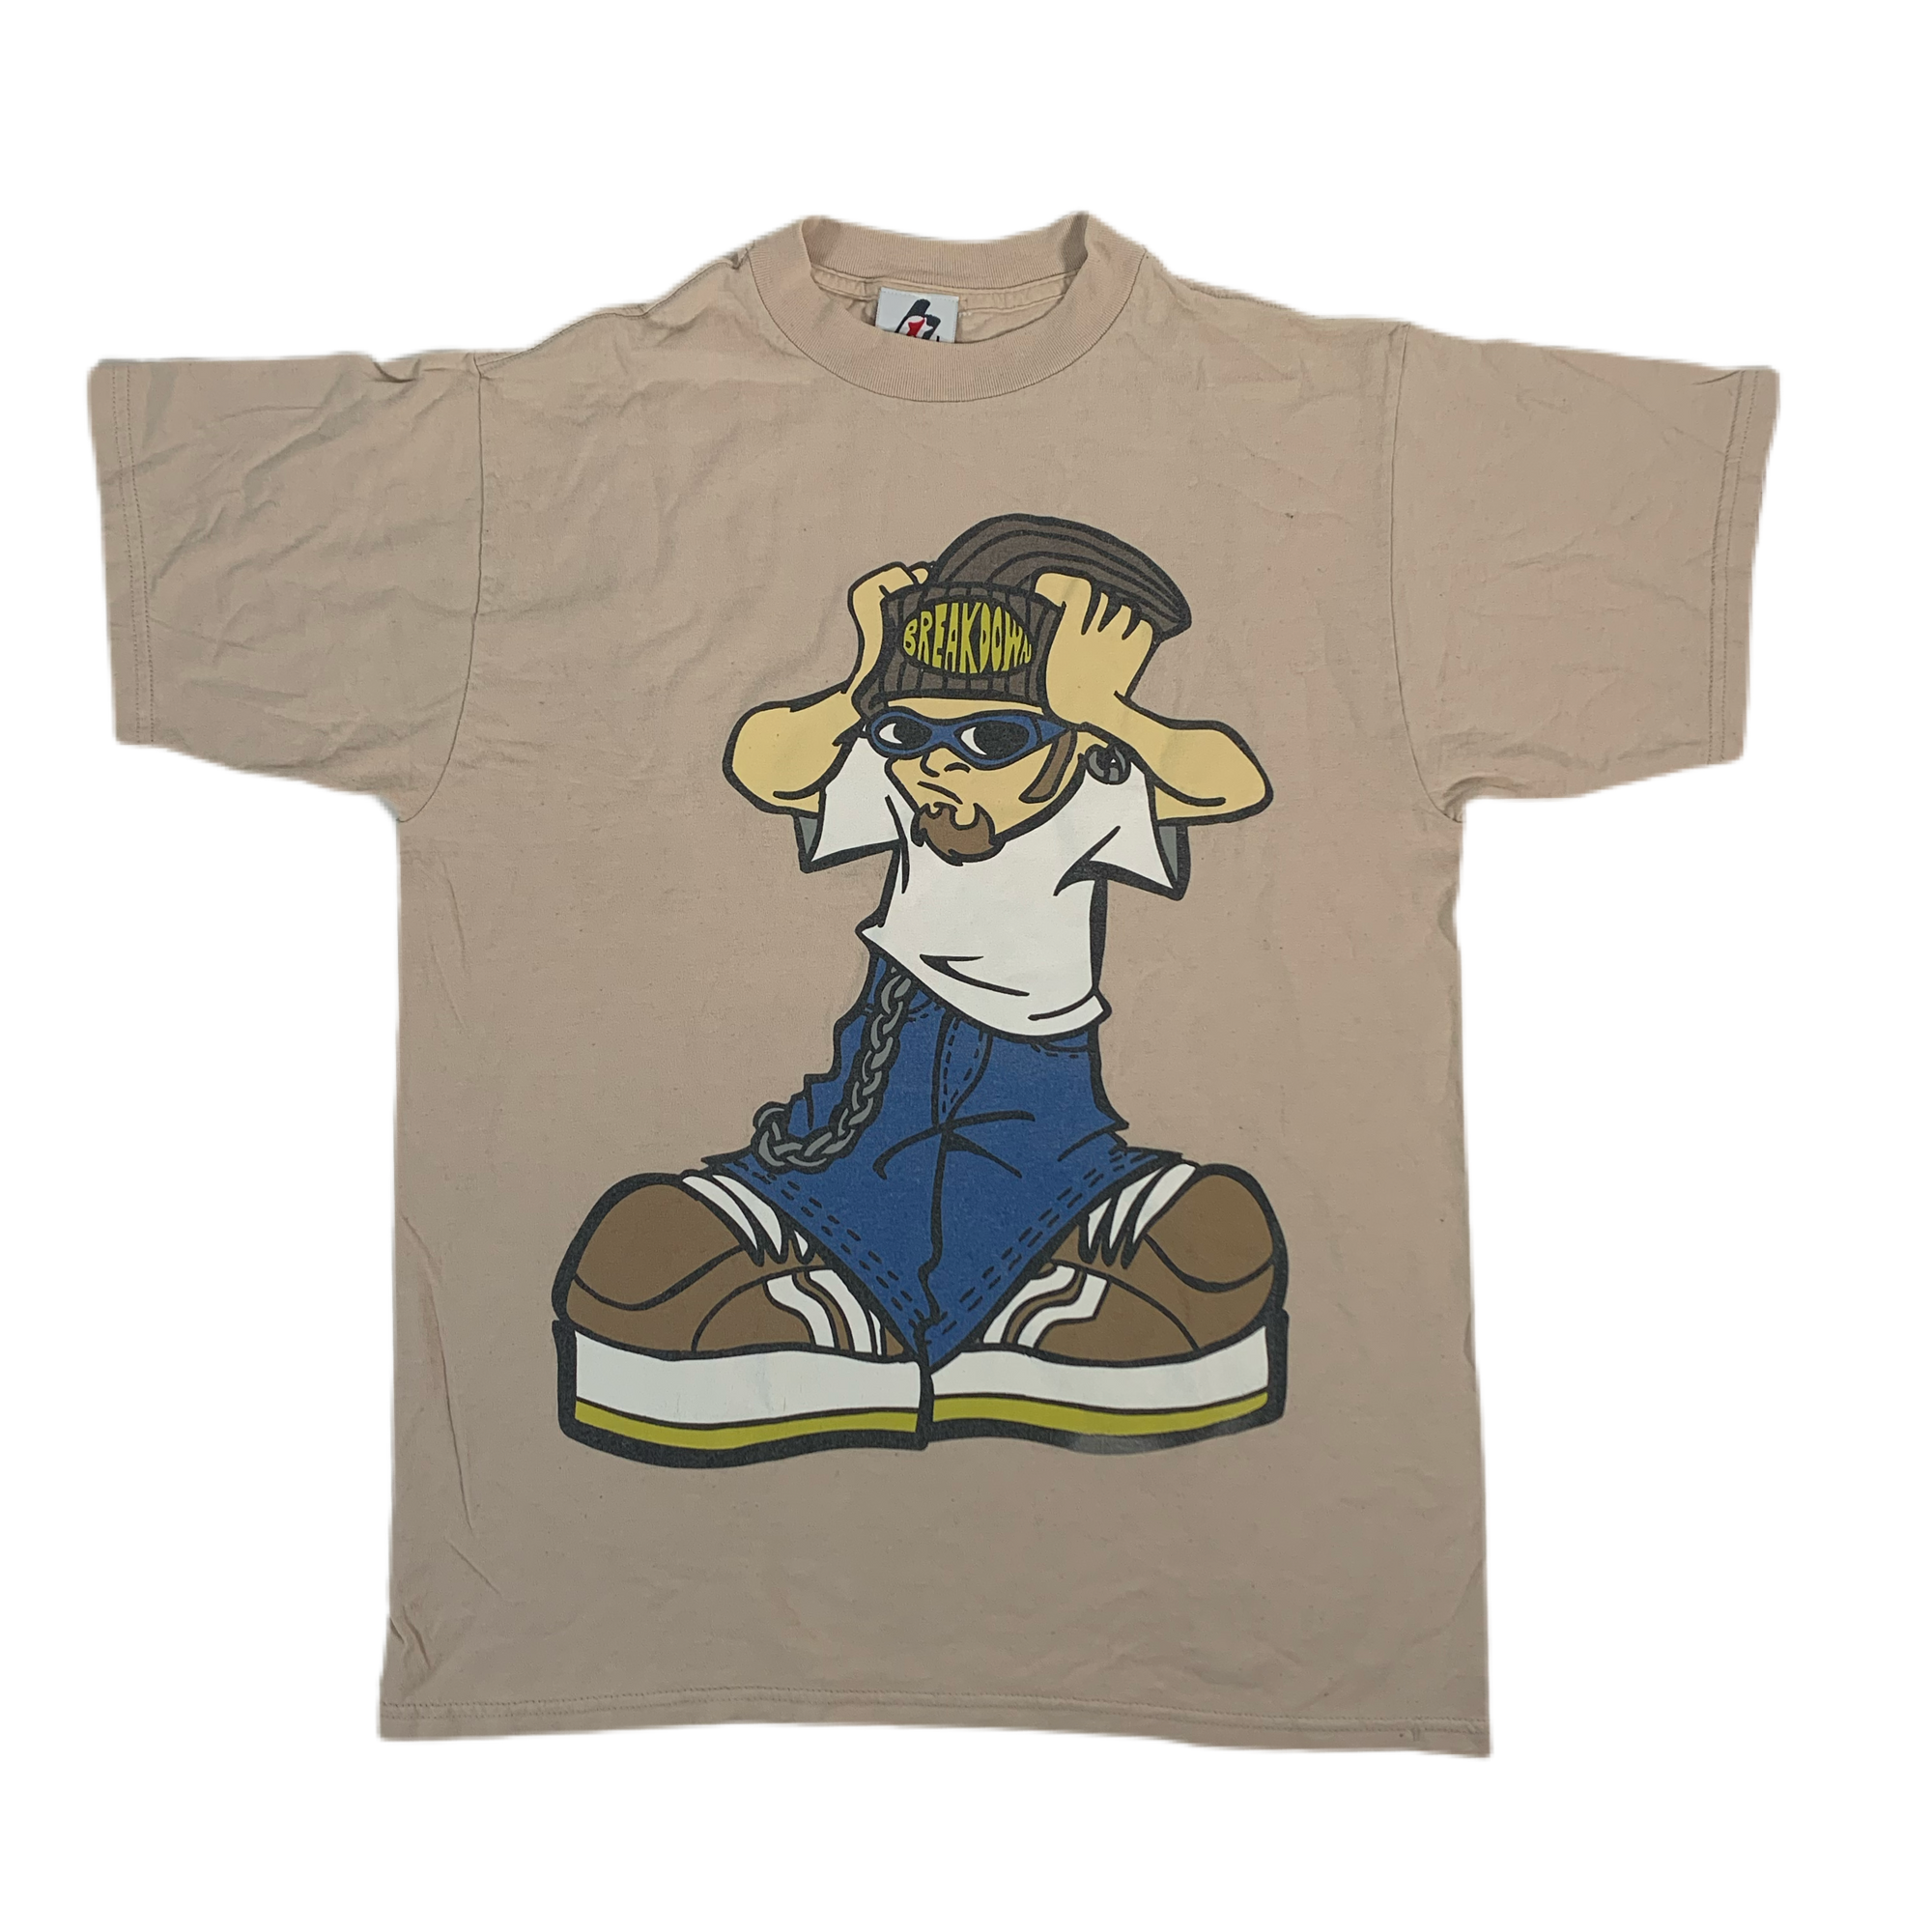 Vintage Breakdown “Streetwear” T-Shirt - jointcustodydc